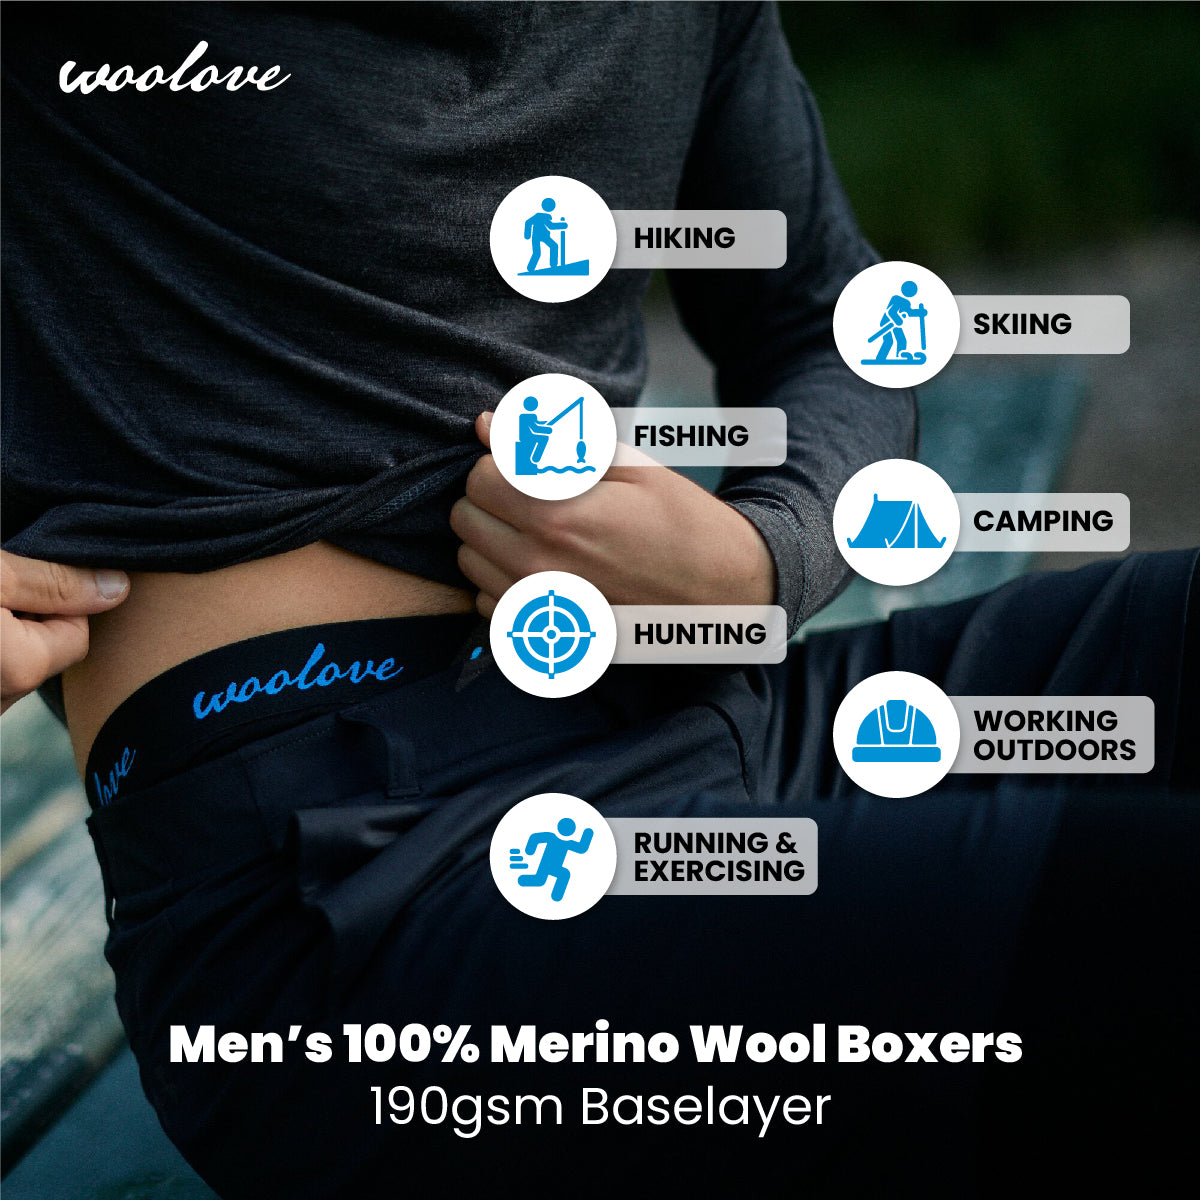 Men's 100% Merino Wool Boxer Brief Underwear – Woolove Apparel